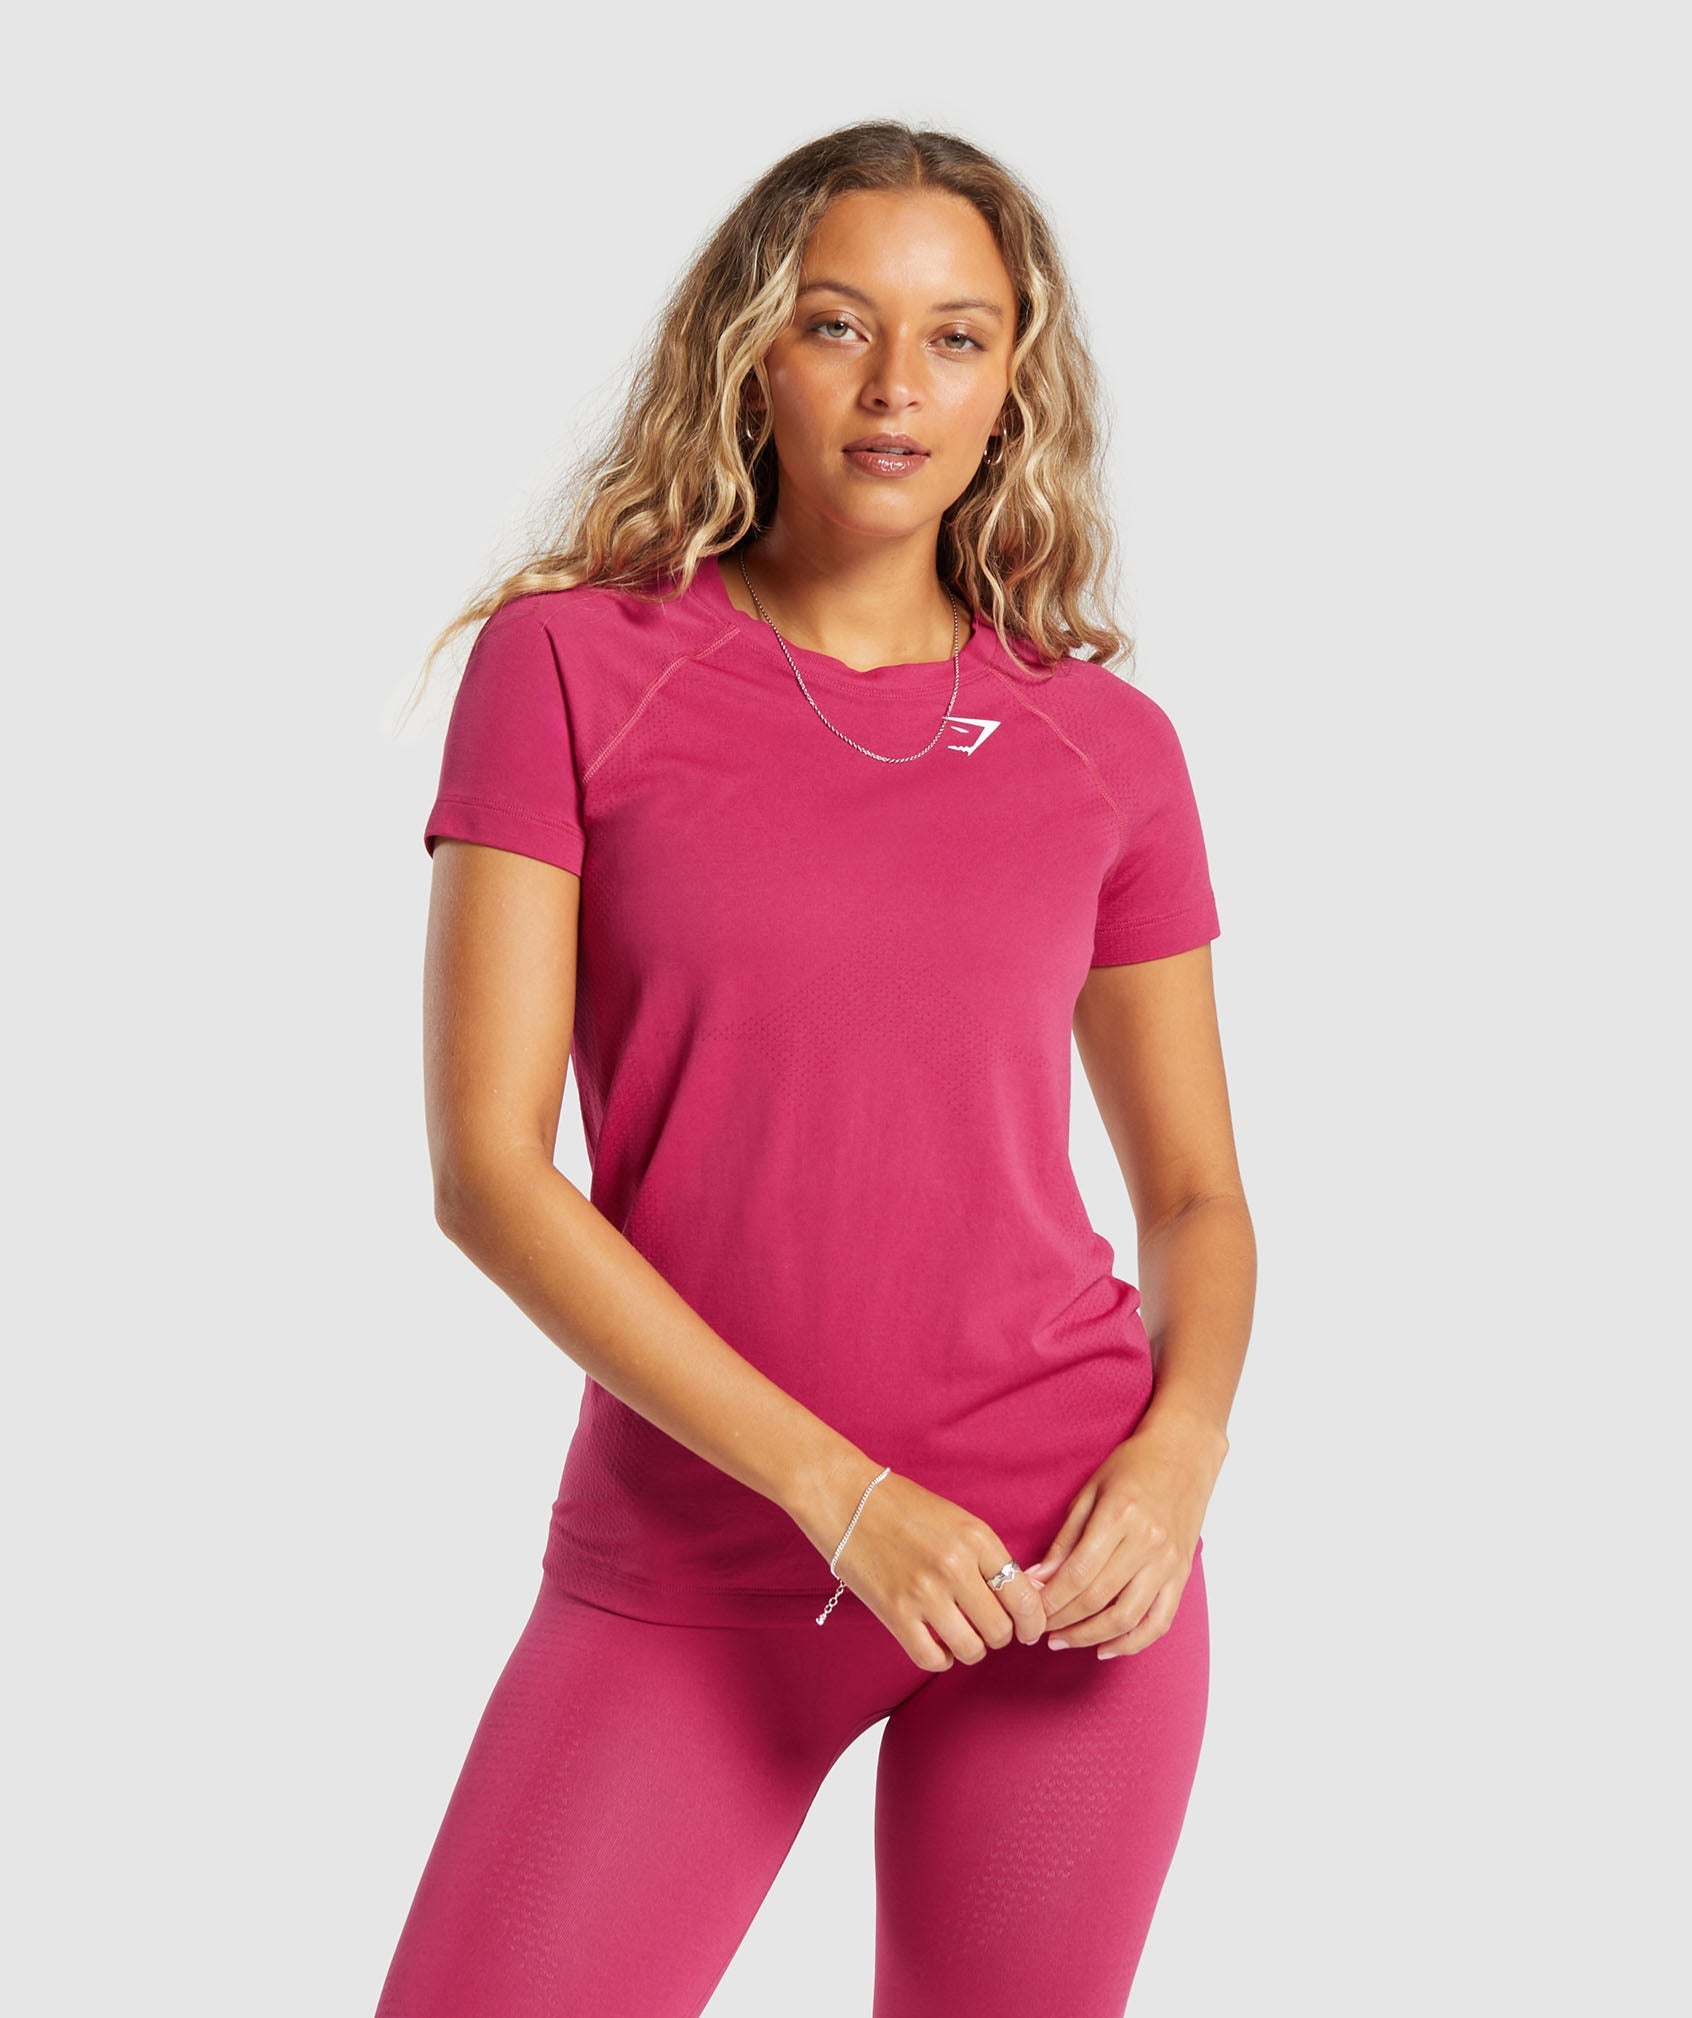 Vital Seamless 2.0 Light T-Shirt in Vintage Pink/Marl ist nicht auf Lager